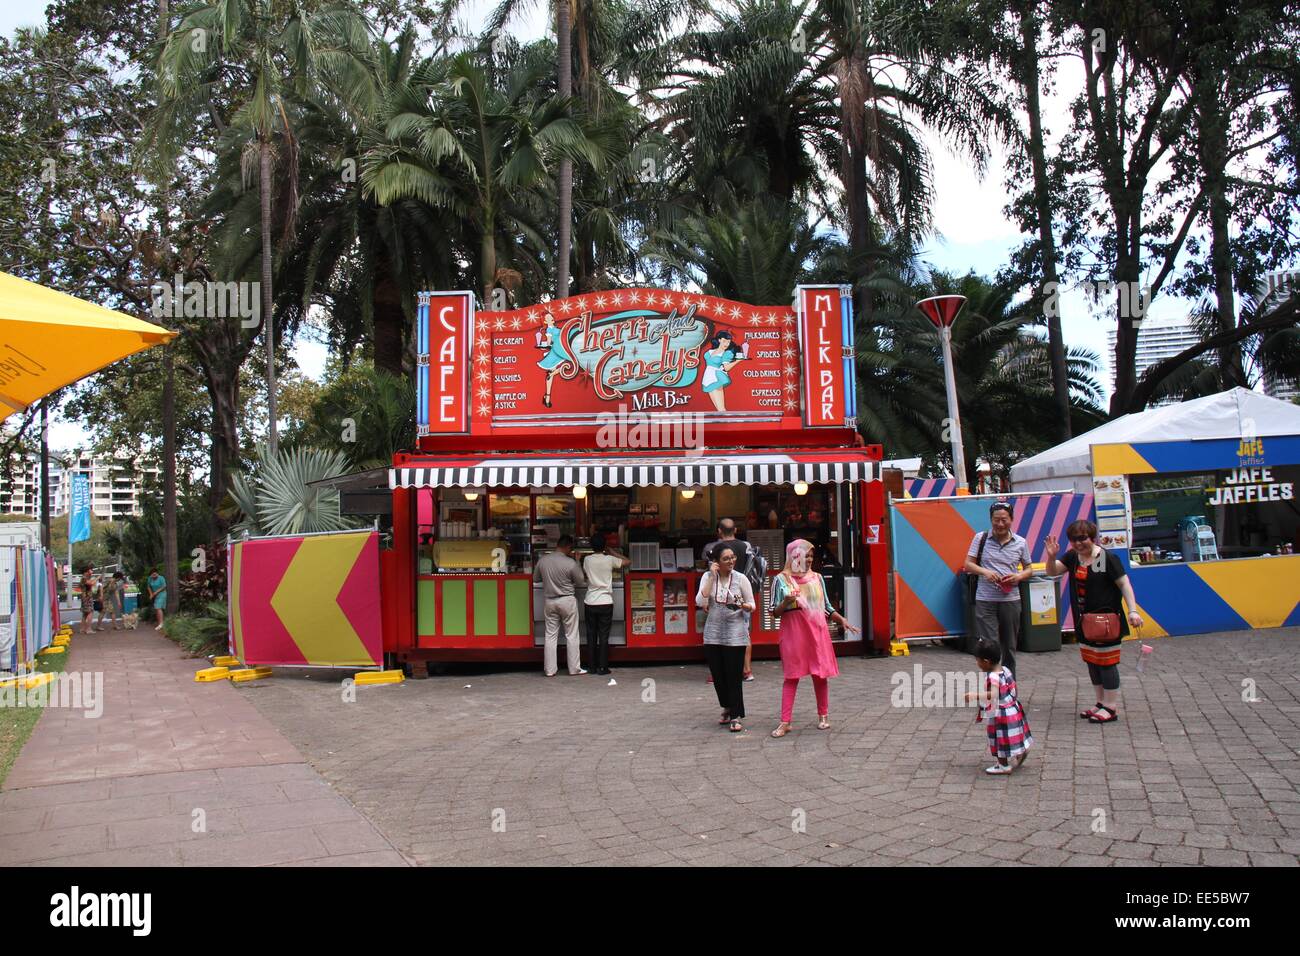 Sydney, Australia. El 14 de enero de 2015. El Sydney Festival Village está abierto del 8 al 25 de enero como parte del Festival de Sydney. En la foto aparece "herri y Candy's Milk Bar". Crédito: Crédito: Copyright 2015. Richard Milnes / Alamy Live News. Foto de stock